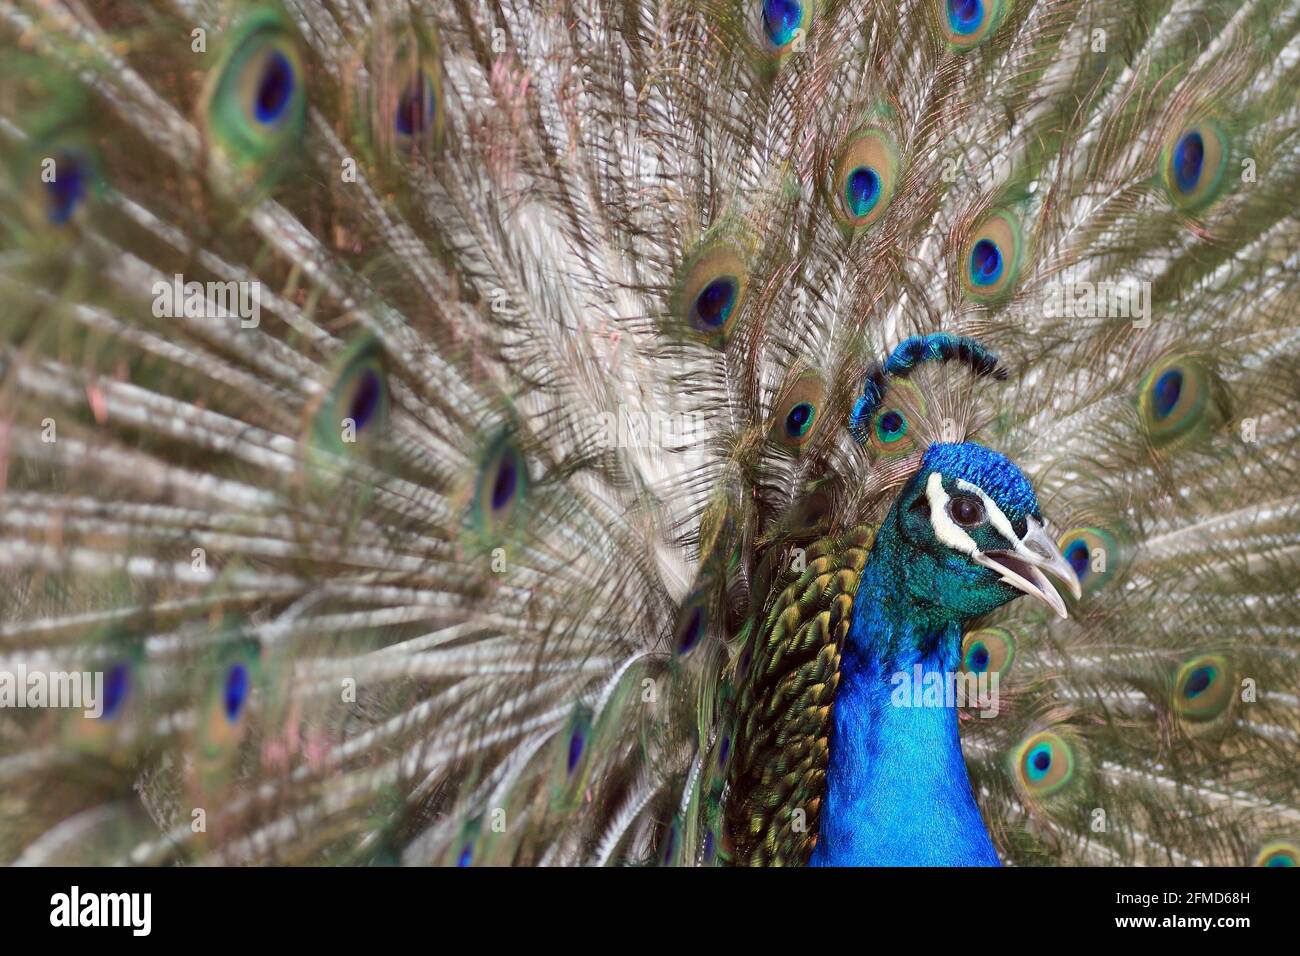 a peacock bird displaying plumage Stock Photo